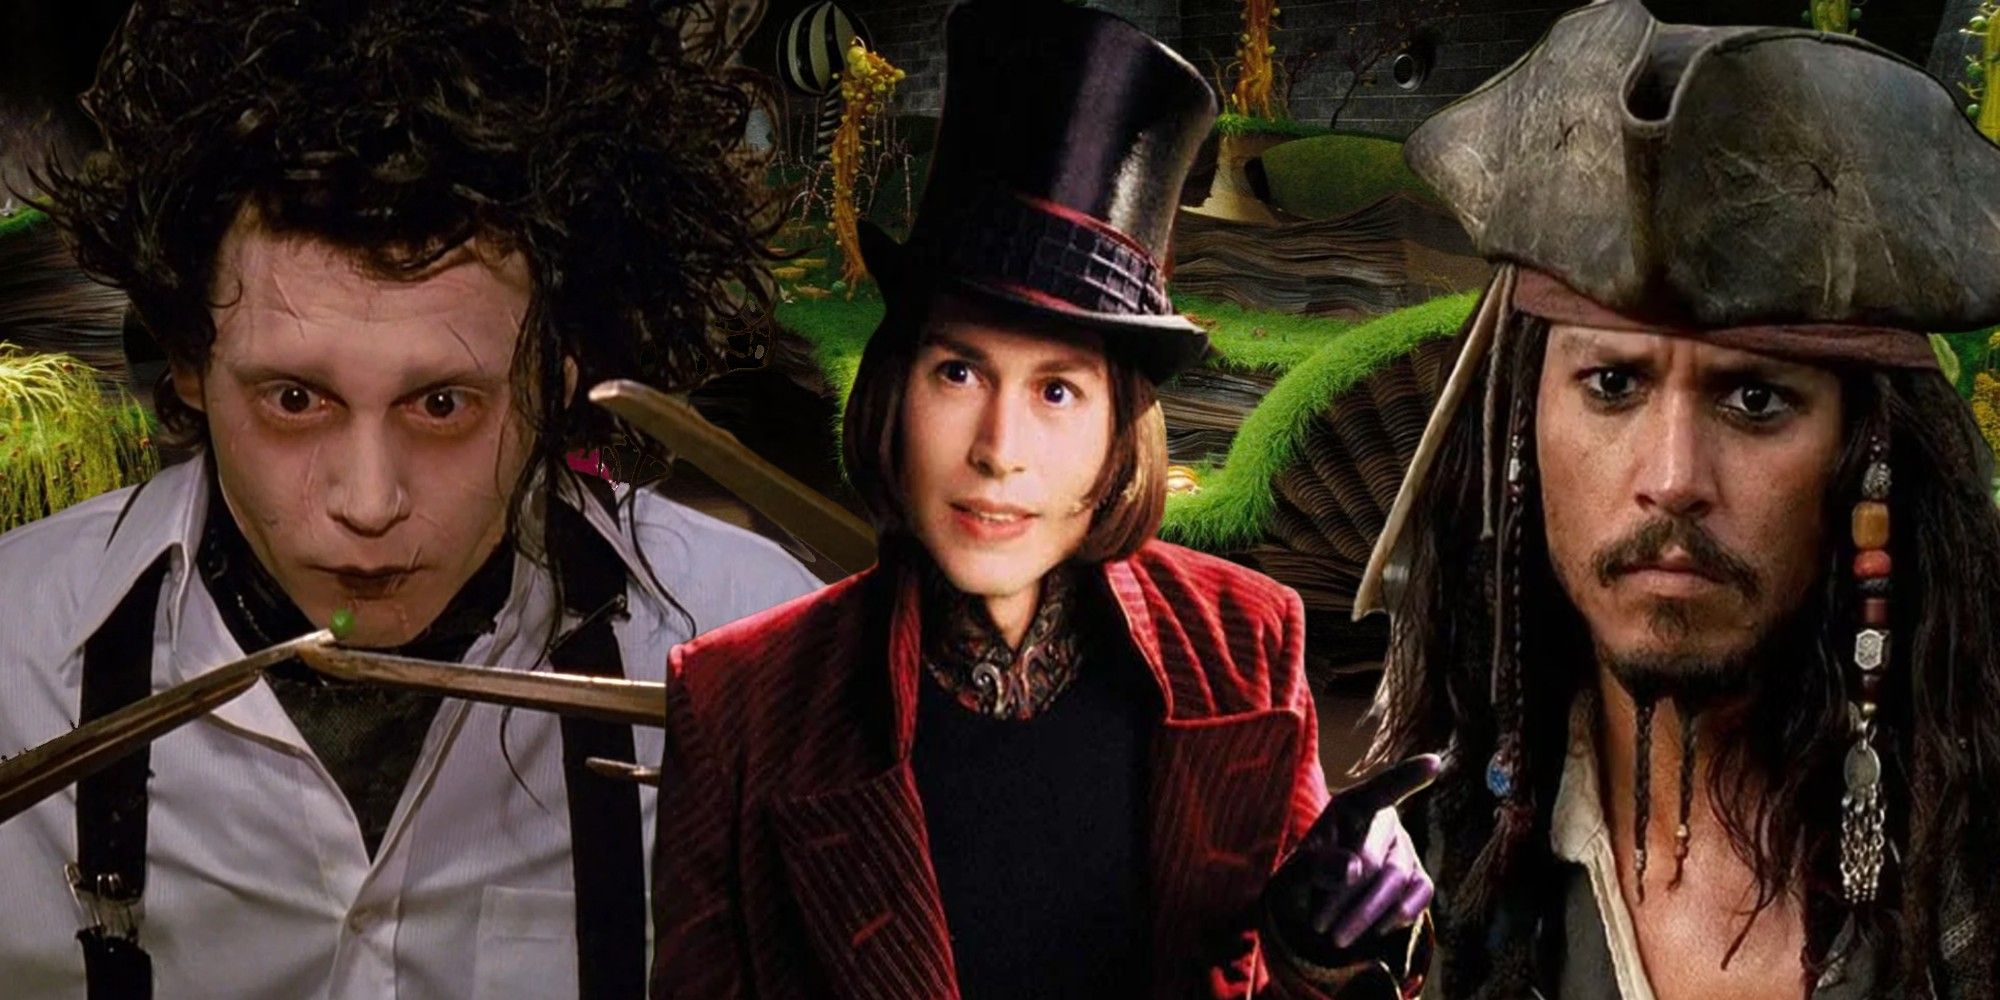 Imagen de collage de Johnny Depp como Eduardo Manostijeras, Willy Wonka y Jack Sparrow